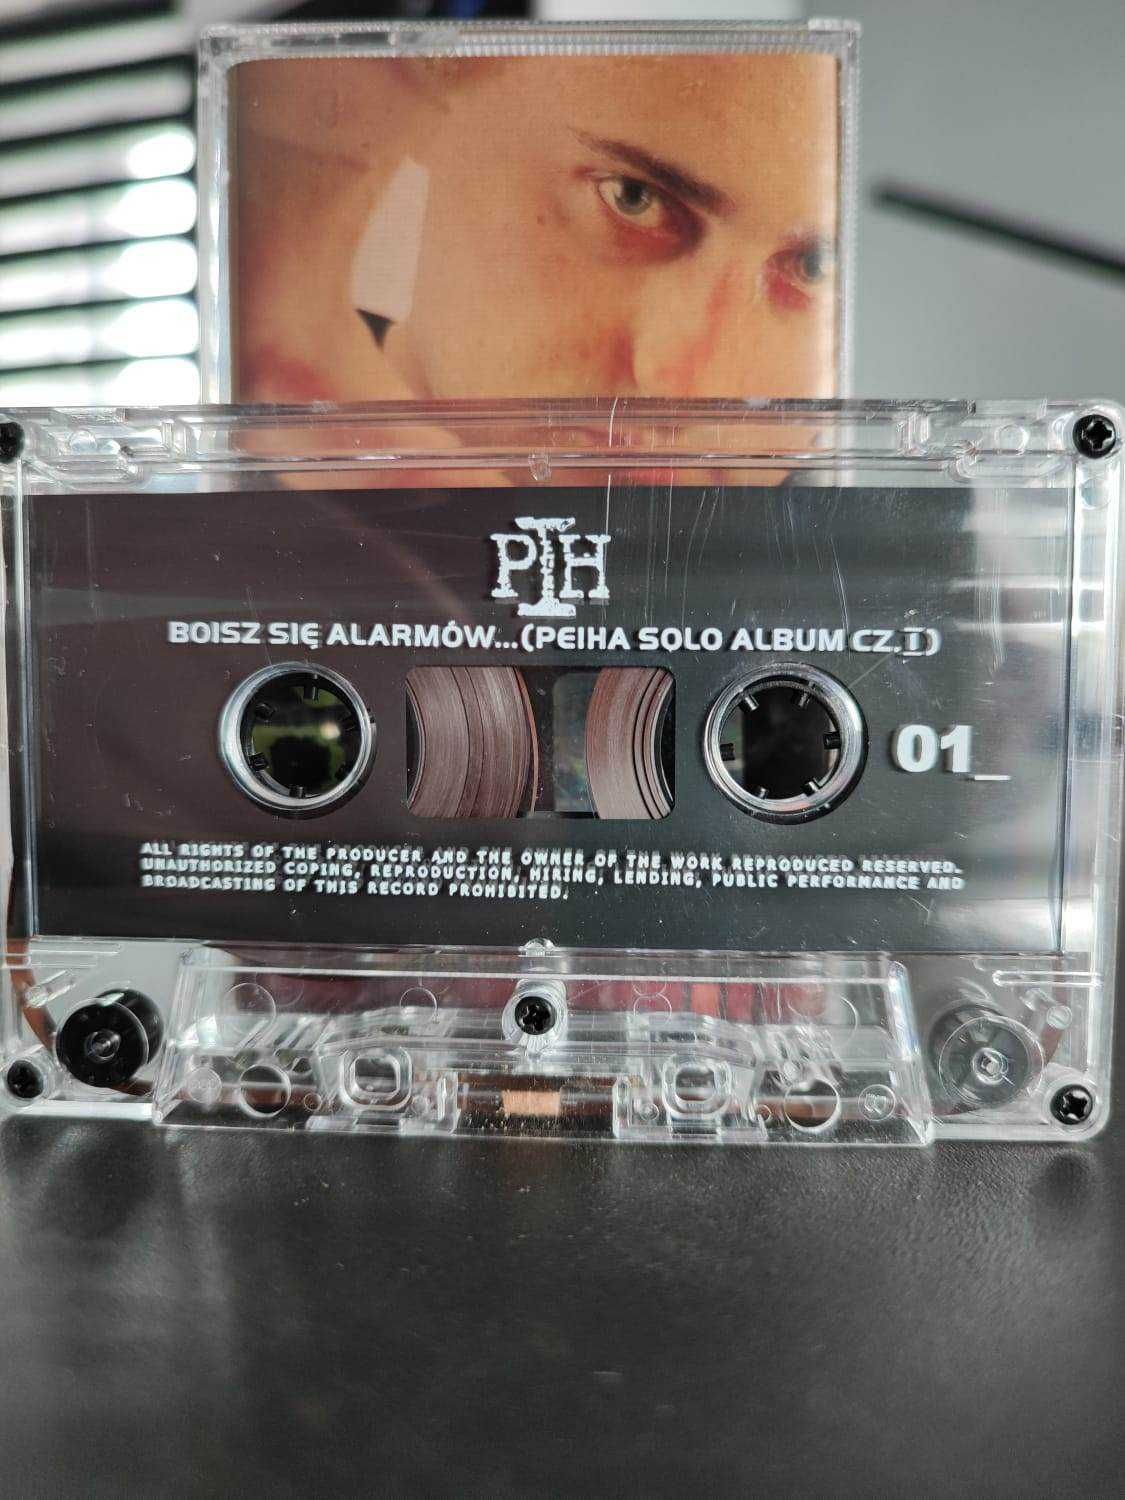 Pih - Boisz się alarmów.. 2002 / Krew pot i łzy 2004 - kasety